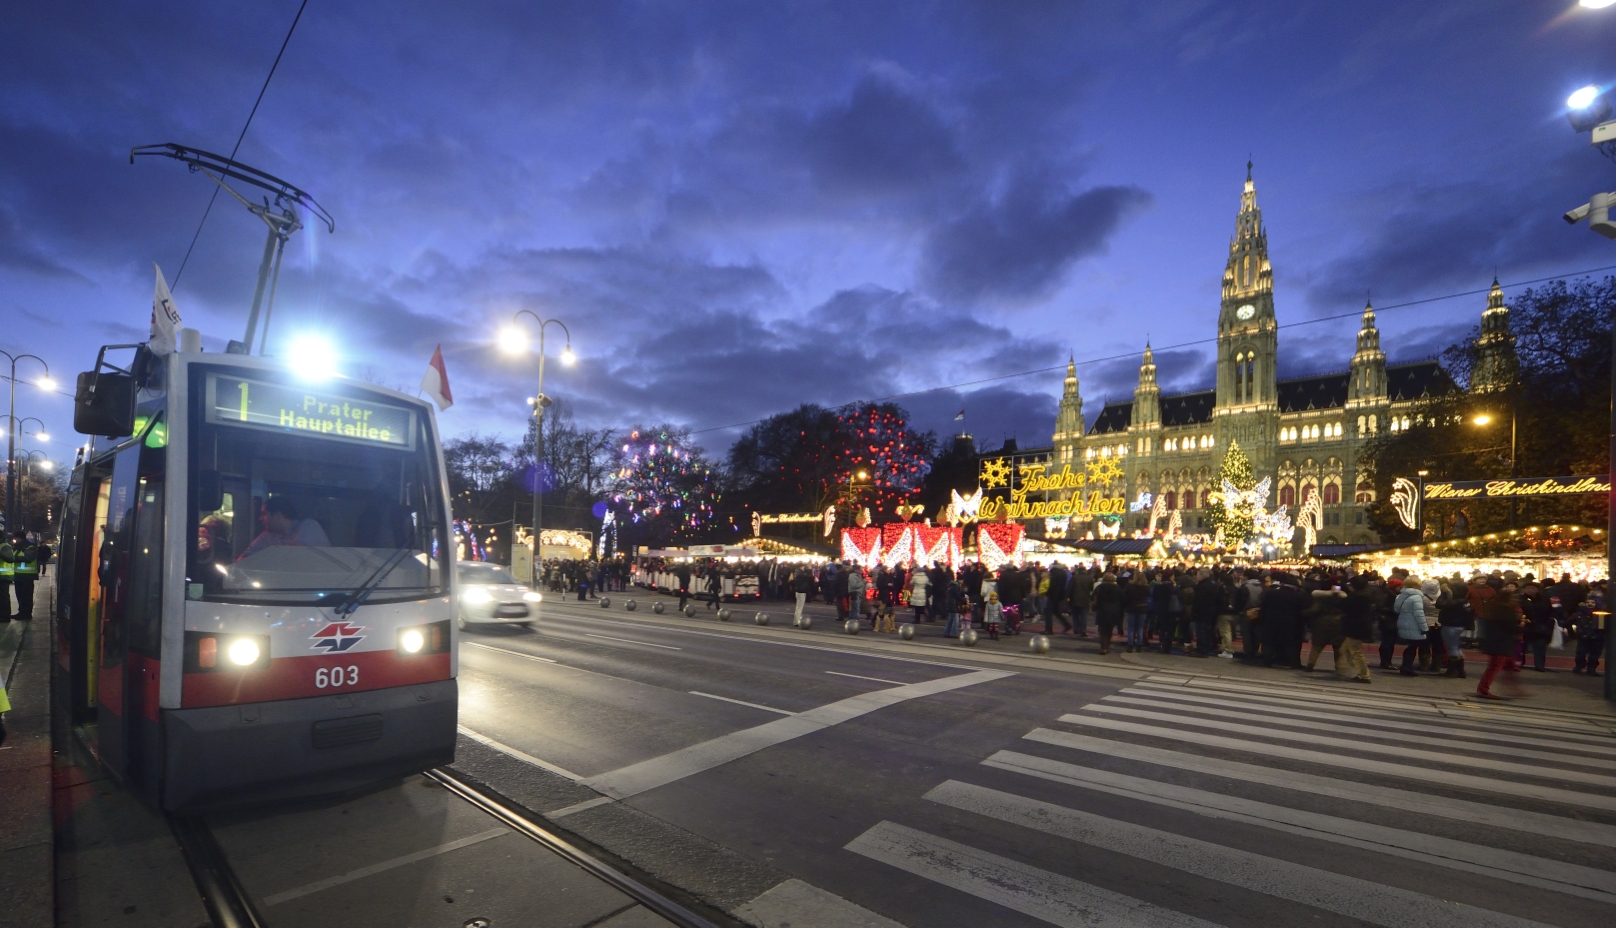 Straßenbahn auf der Ringstraße mit Weihnachtsbeleuchtung.